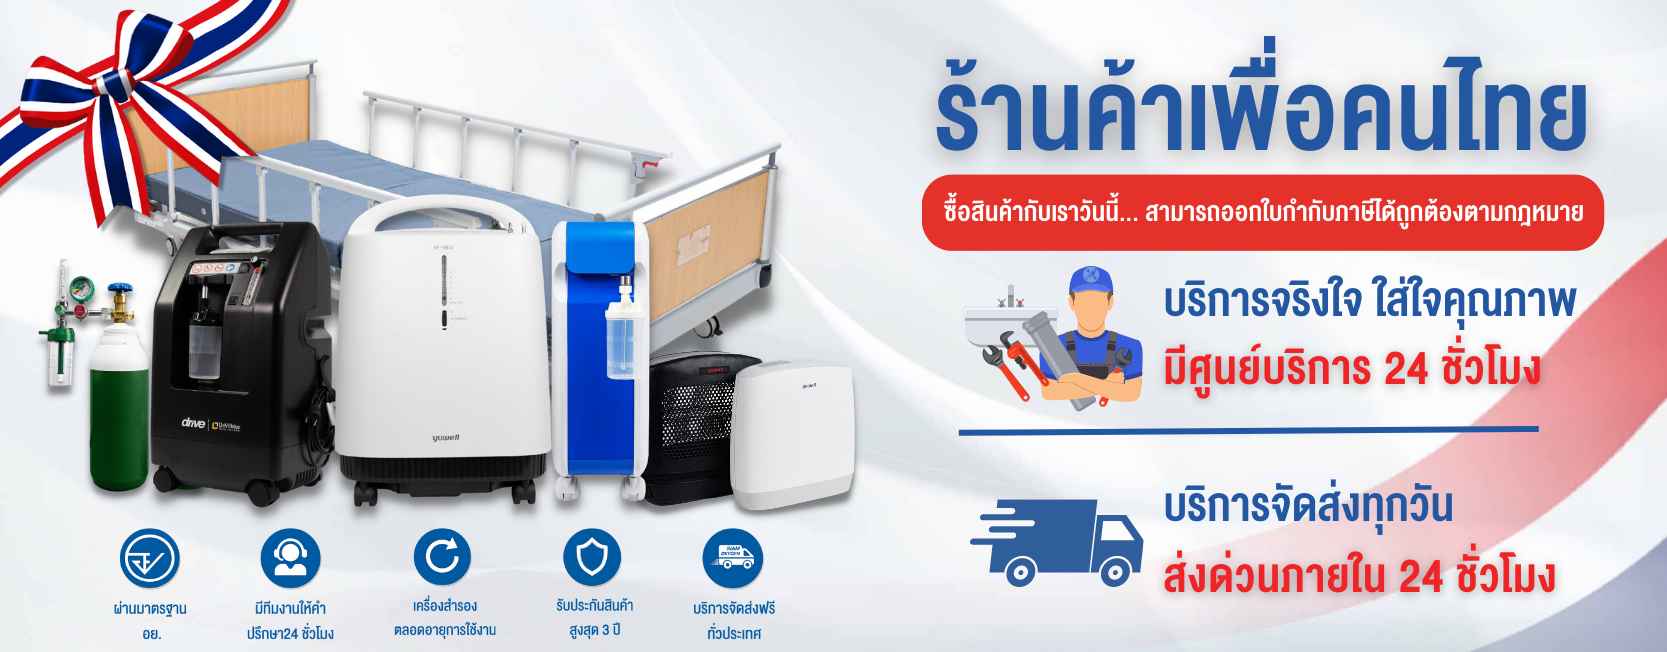 ร้านสยามออกซิเจน (Siam Oxygen) จำหน่ายเครื่องผลิตออกซิเจนเป็นเจ้าแรกของประเทศไทย ศูนย์รวมเครื่องผลิตออกซิเจน อุปกรณ์การแพทย์แบบครบวงจร